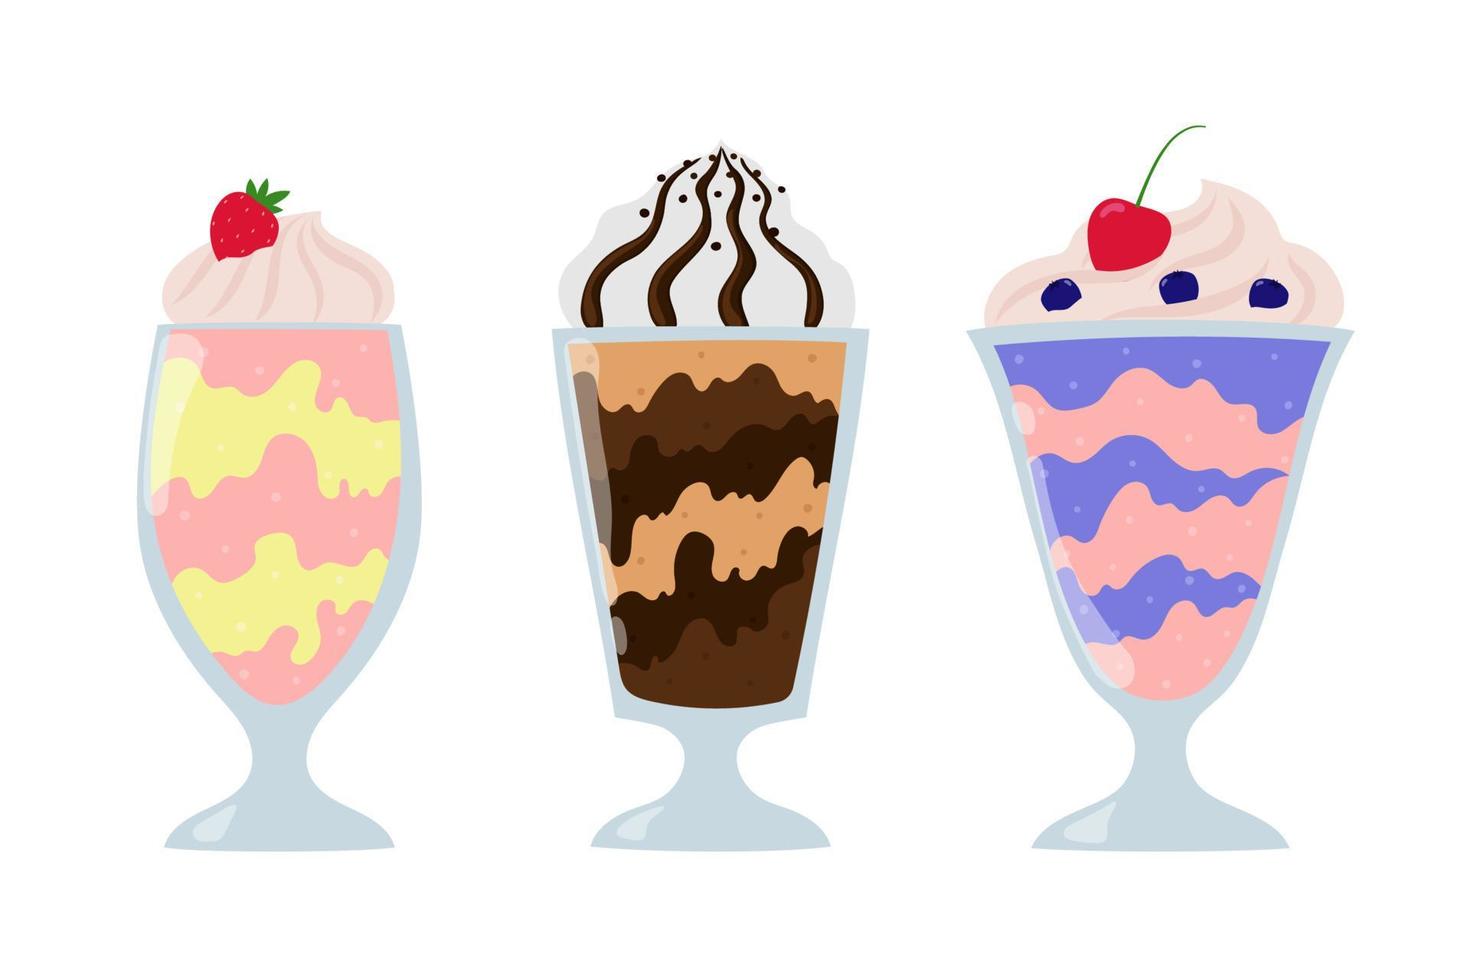 milkshake samling. körsbär och blåbär, jordgubb och banan, chokladmilkshake. tecknade sommardesserter med grädde. vektor